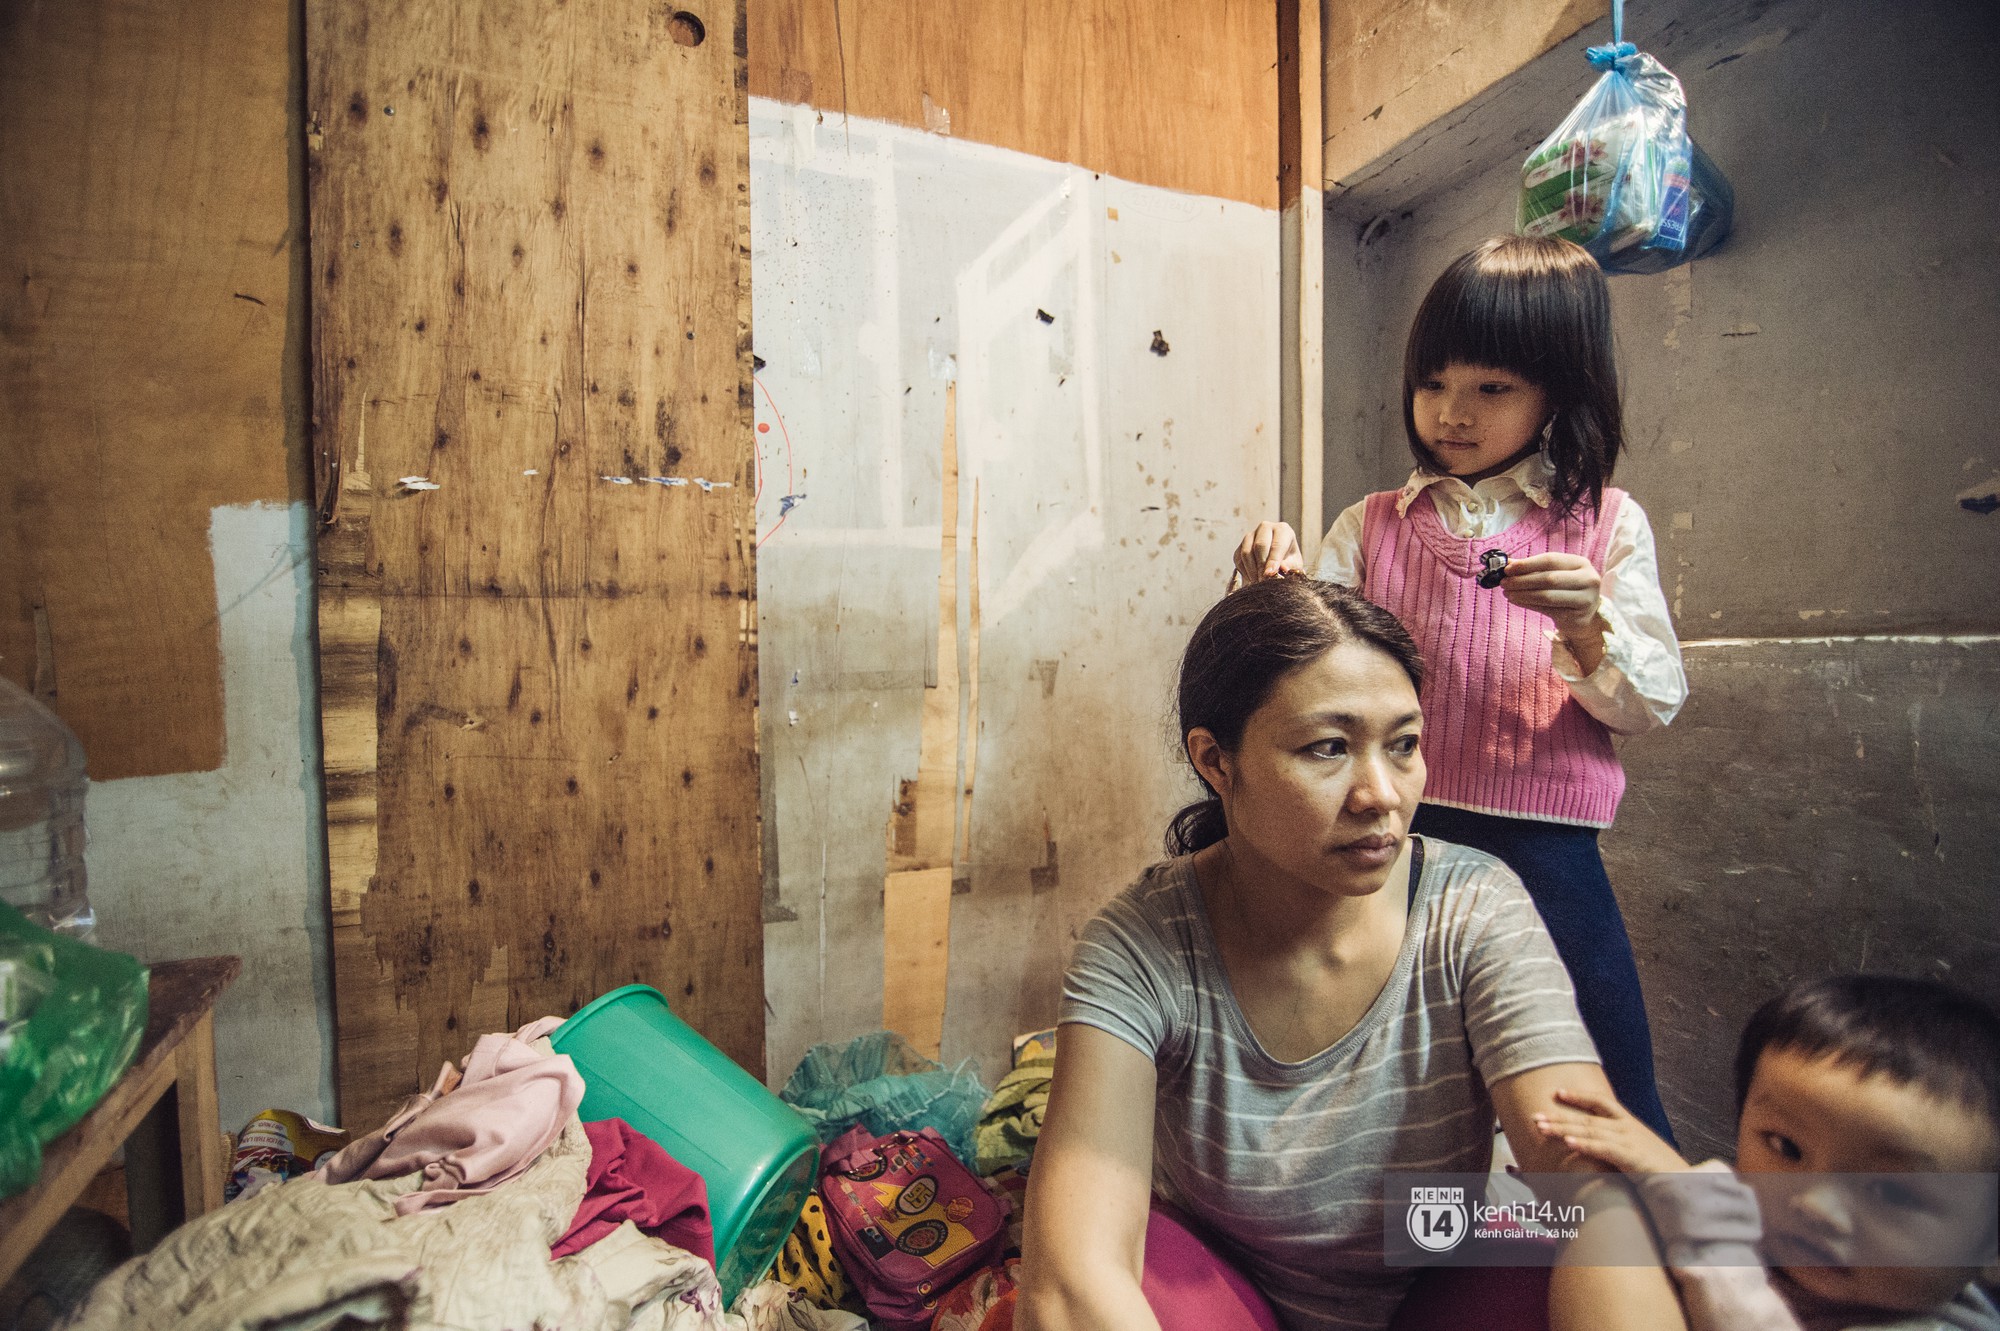 Chùm ảnh: Những khoảnh khắc đốn tim của em bé nghèo có gu ăn mặc như fashionista ở Hà Nội - Ảnh 7.